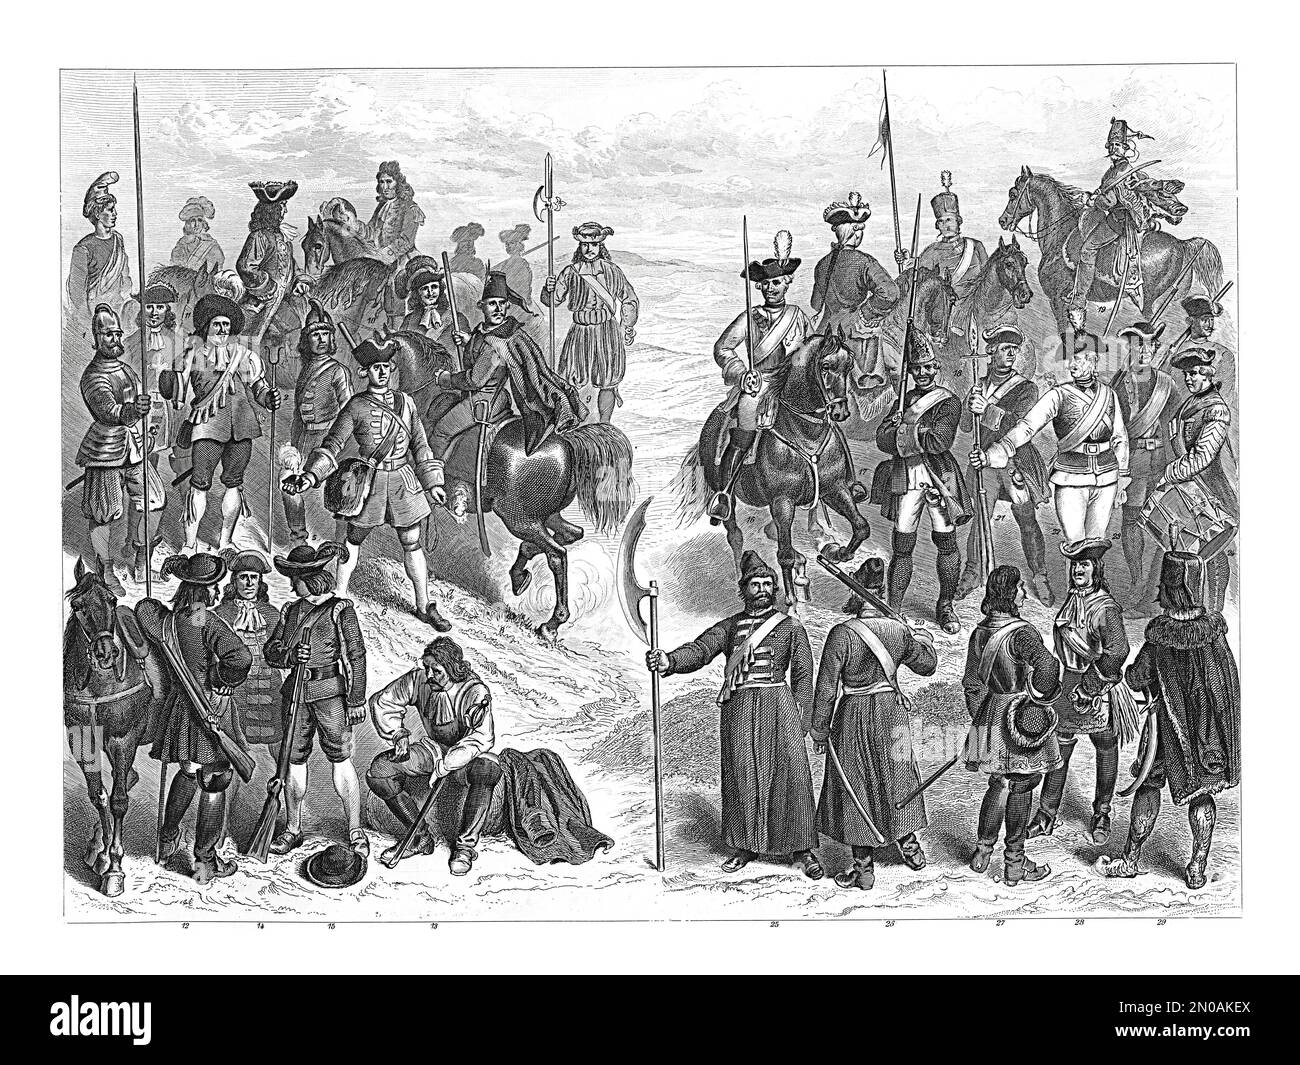 Incisione del 19th° secolo di unità militari europee, XVII-XVII Truppe francesi (1-11): 1. Hussar; 2. Ufficiale; 3. Pikiner; 4. Moschettiere; 5,6. Grenadiers; Foto Stock